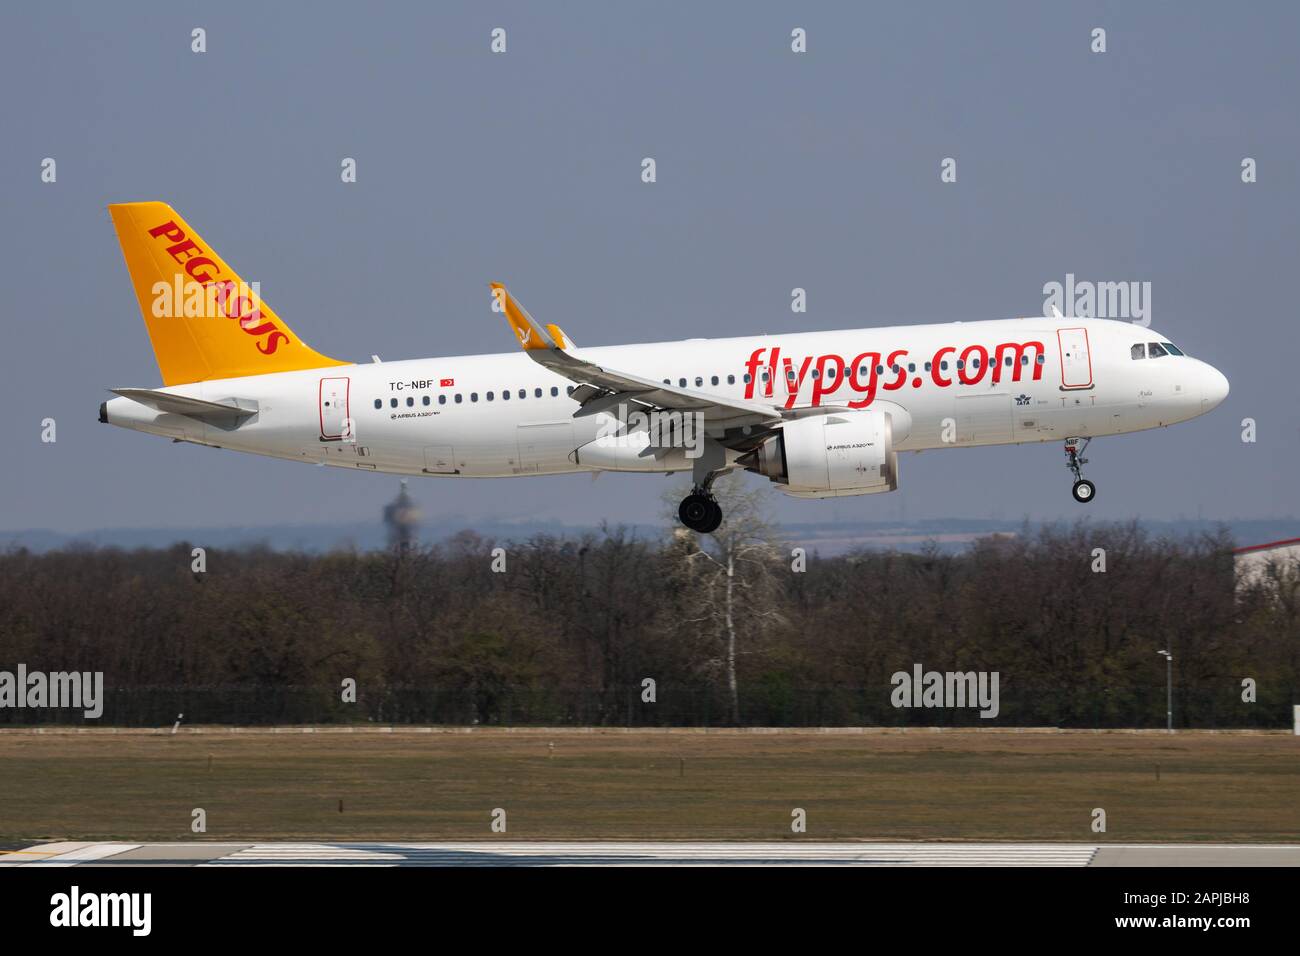 Pegasus Airlines Stockfotos und -bilder Kaufen - Alamy